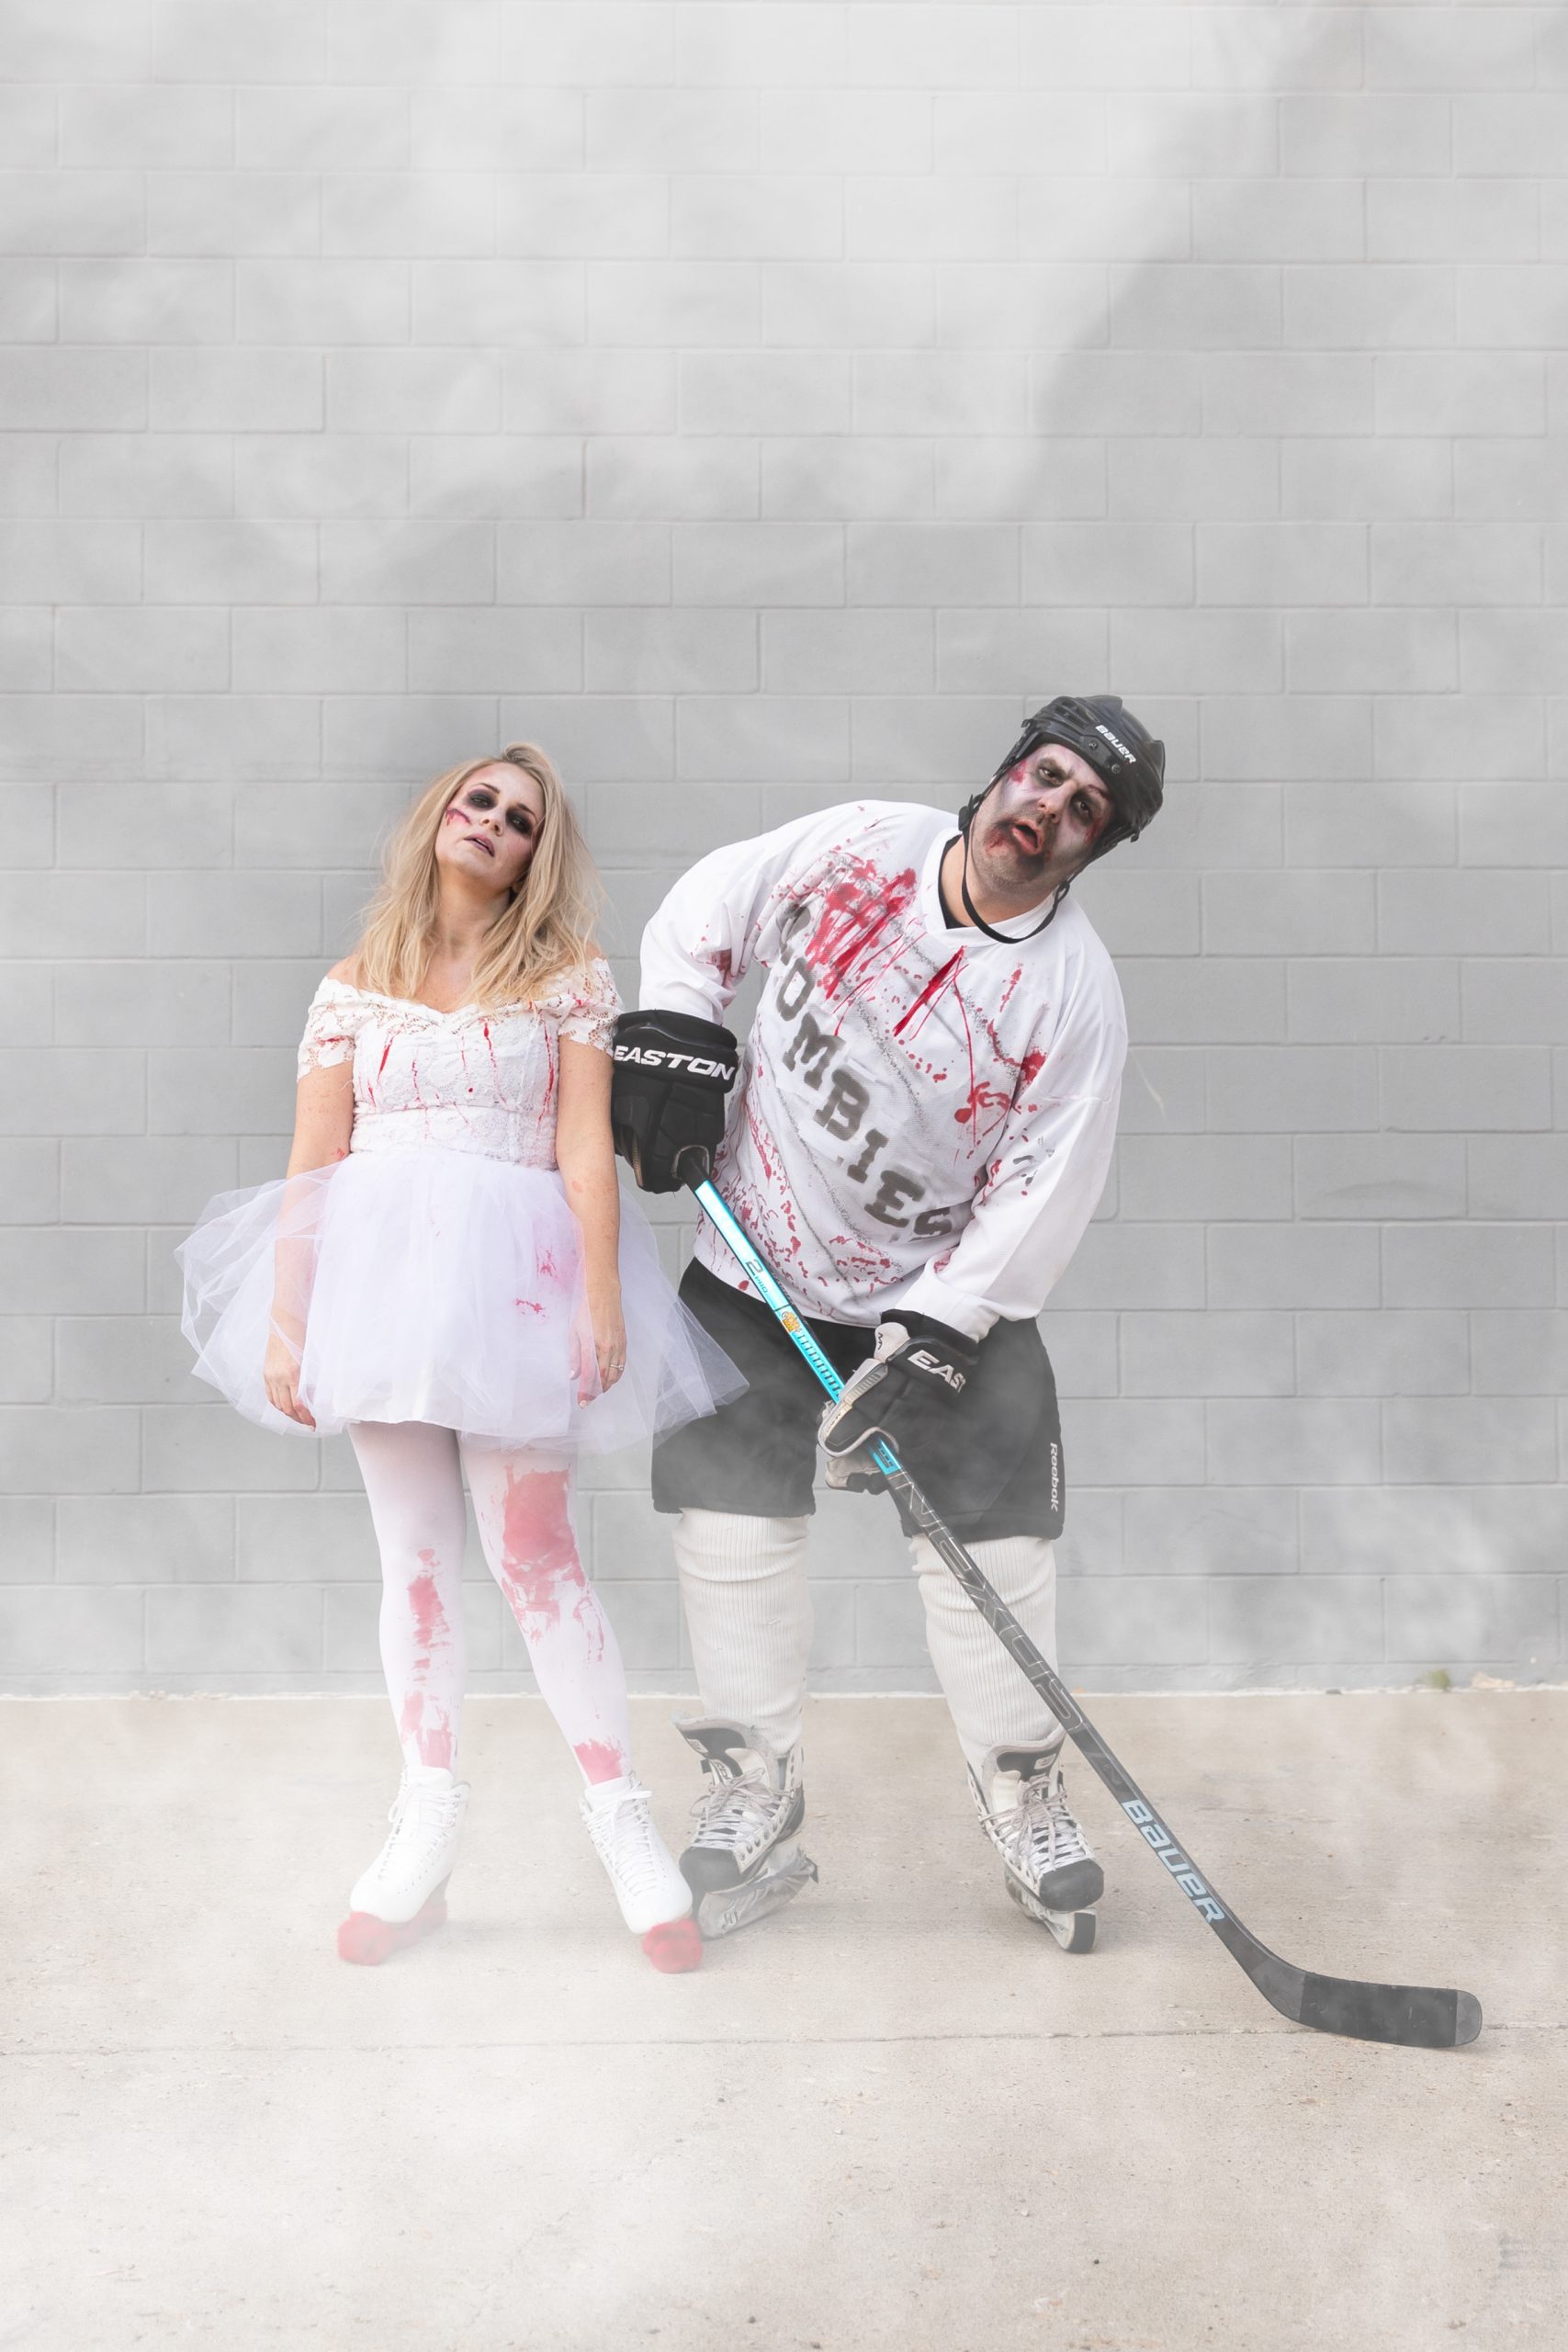 Zombie Hockey Player Costume